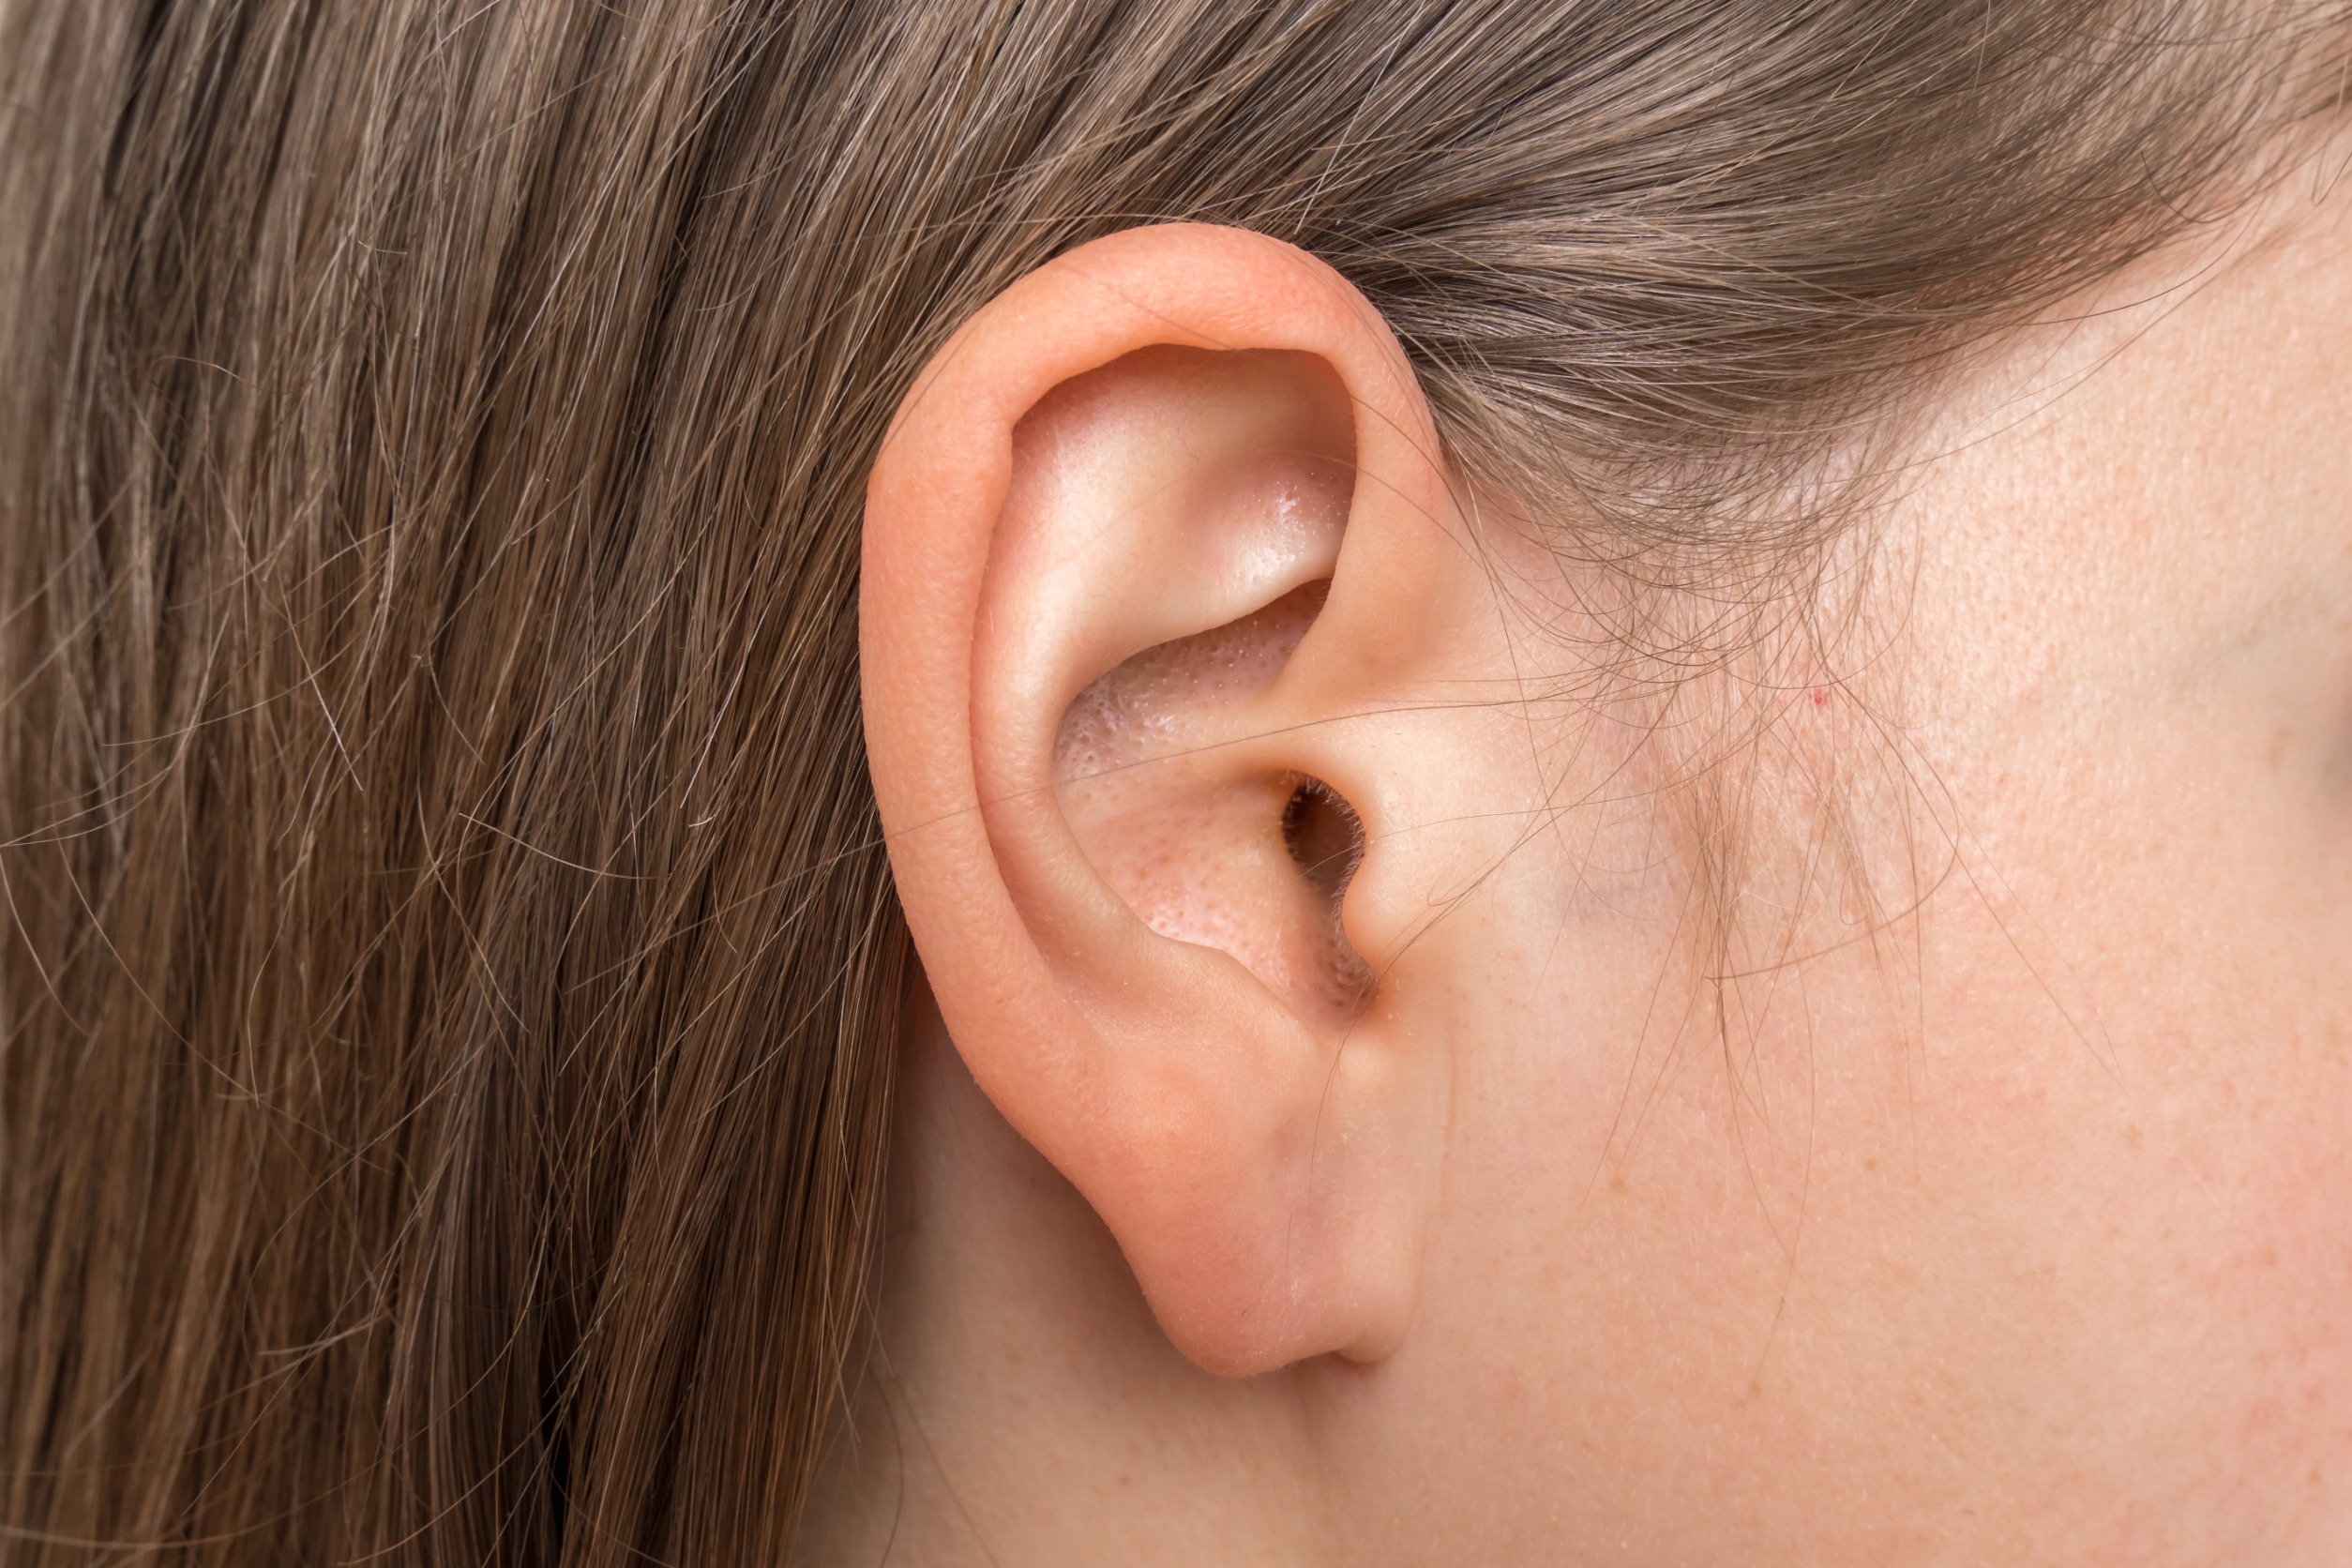 acqua ossigenata nelle orecchie benefici